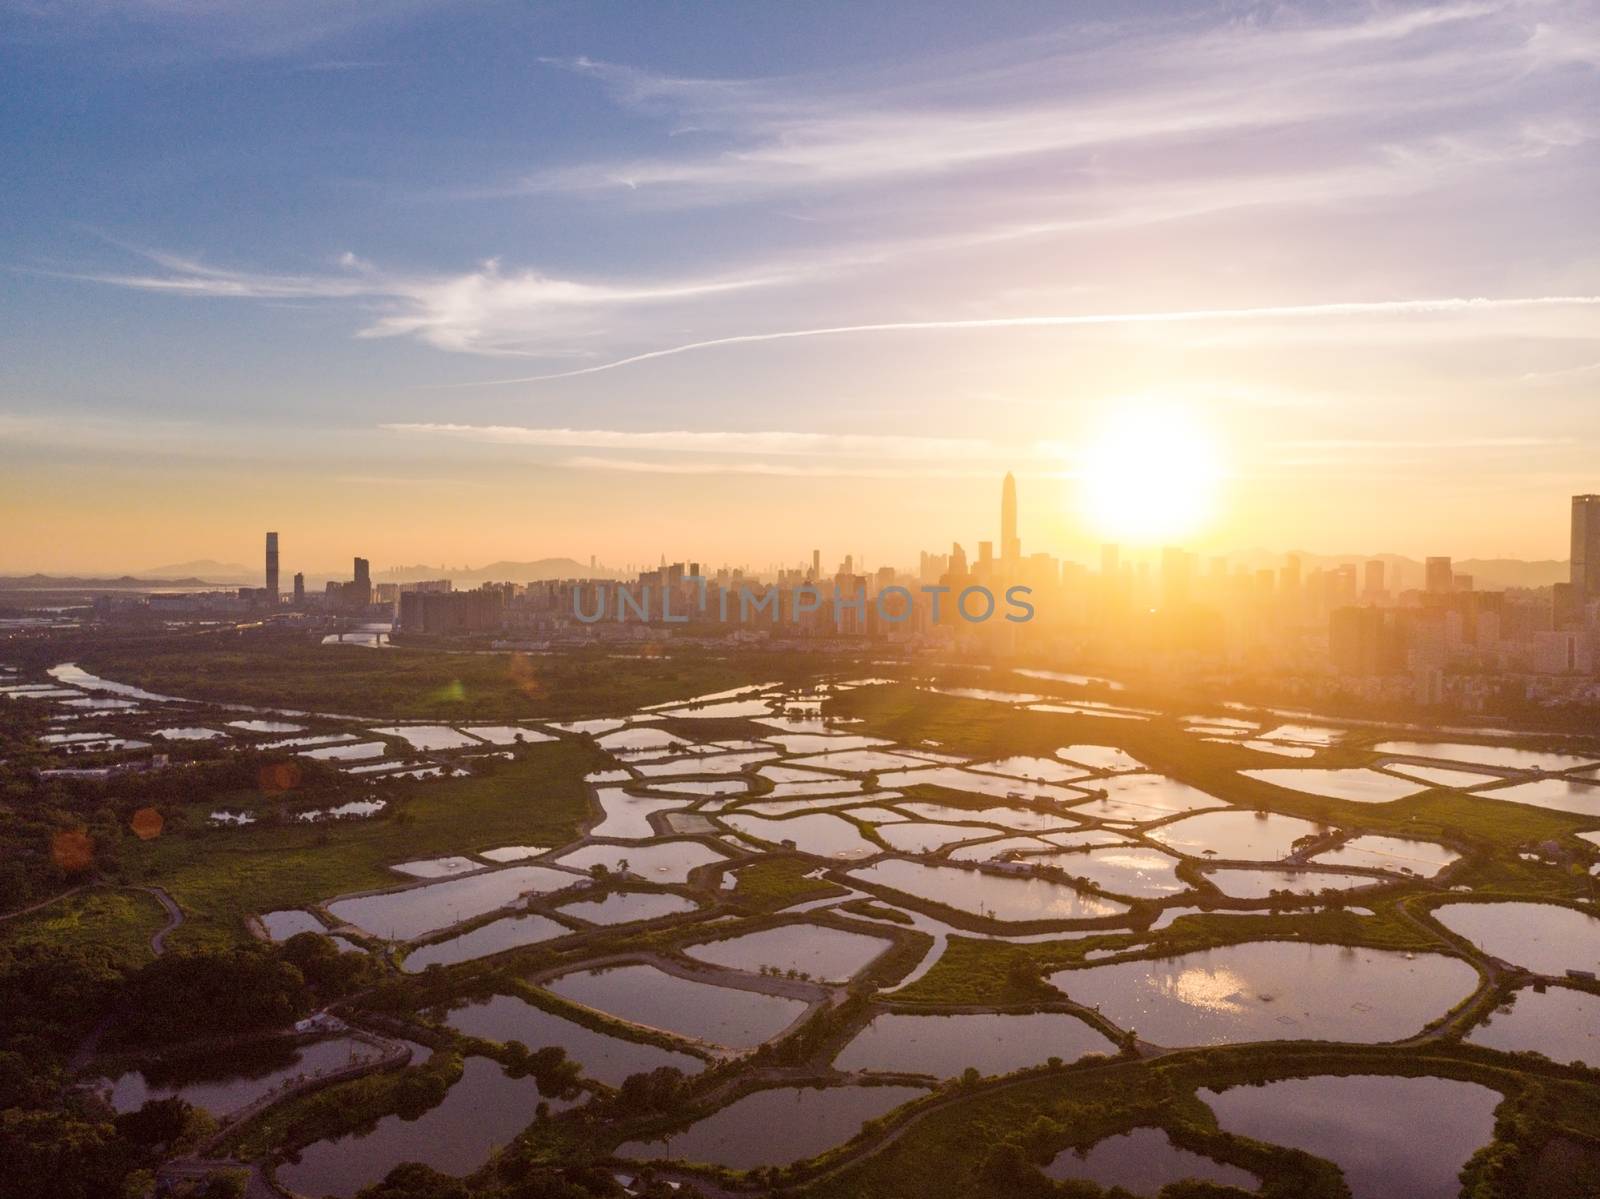 Cityscape of Shenzhen, China by cozyta